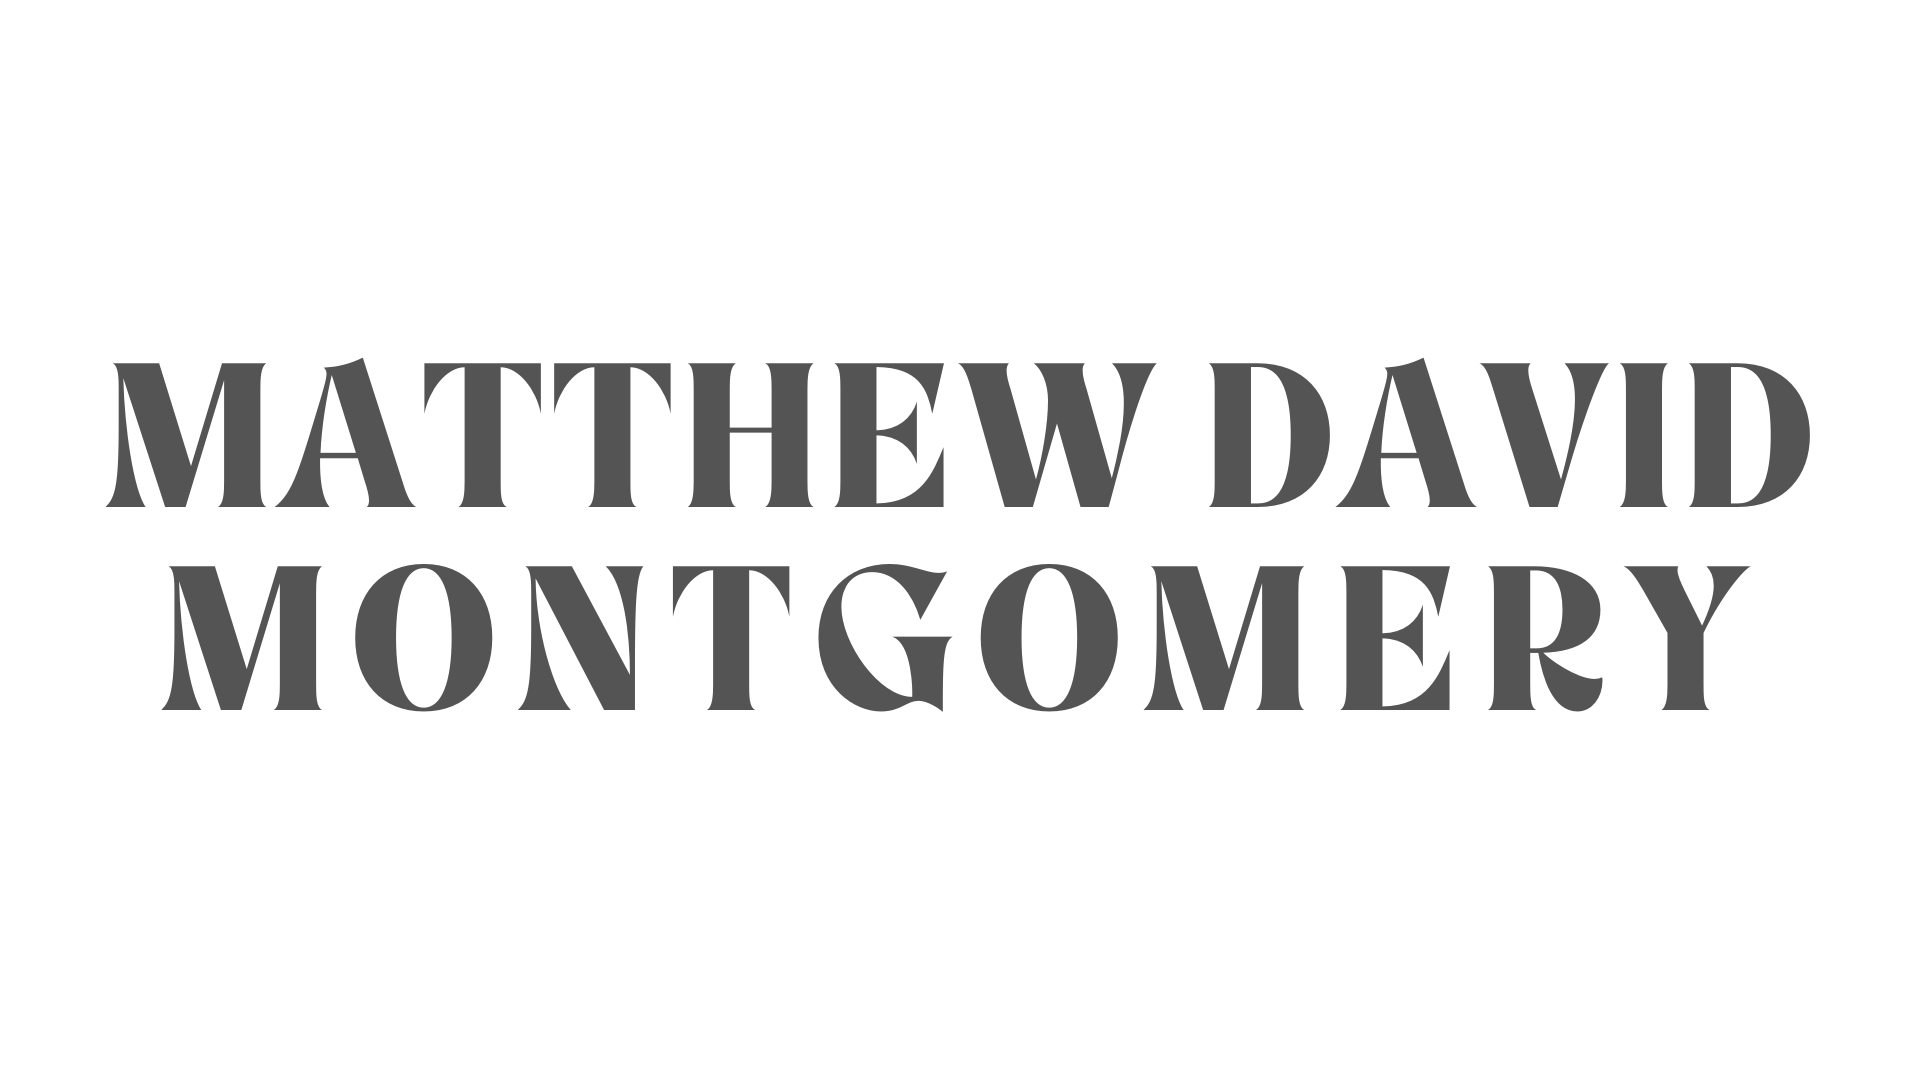 Matthew David Montgomery